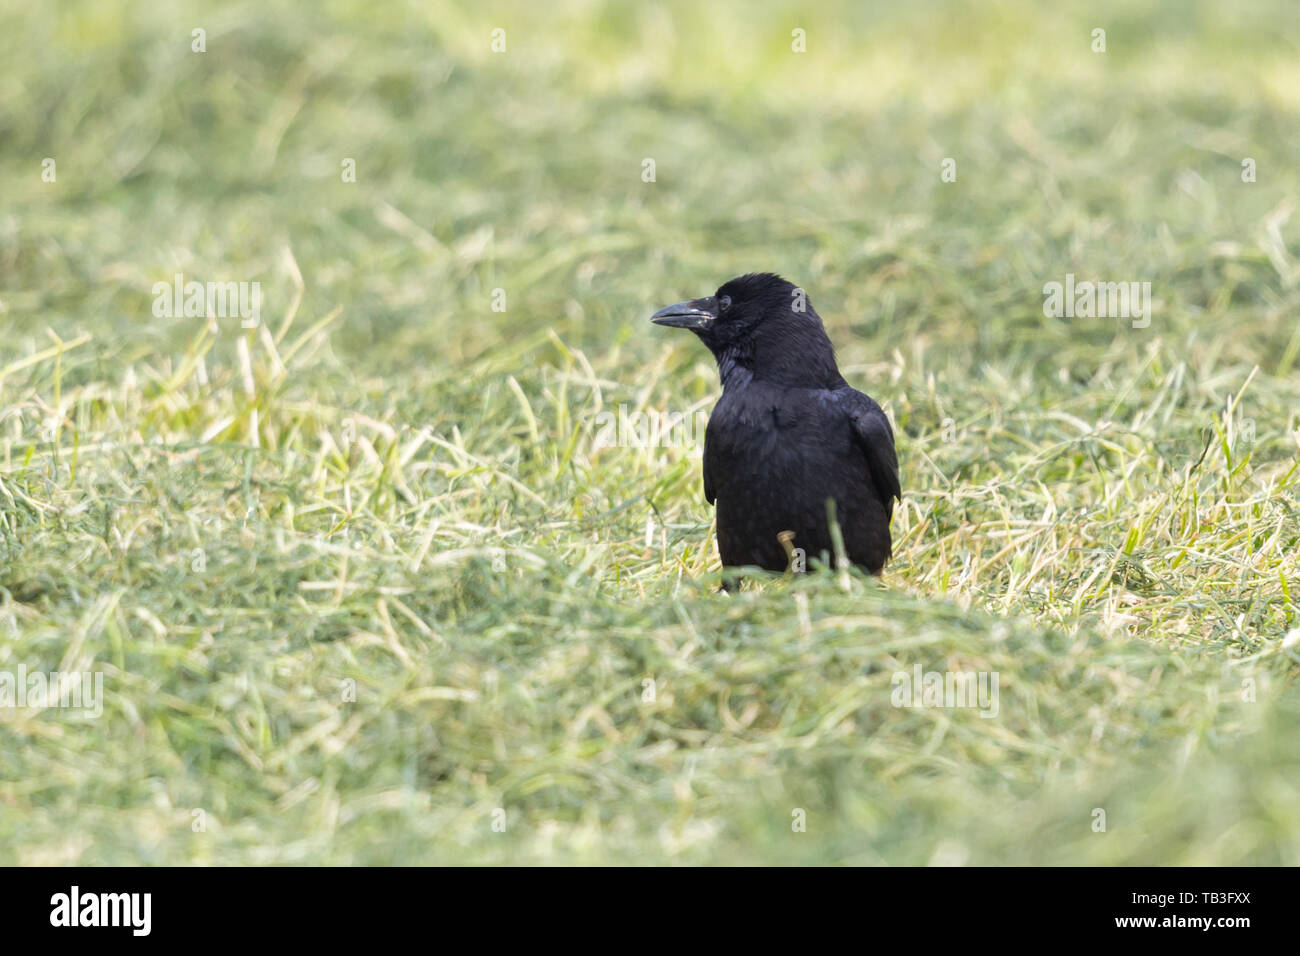 Naturel noir corneille (Corvus corone) standing in meadow Banque D'Images